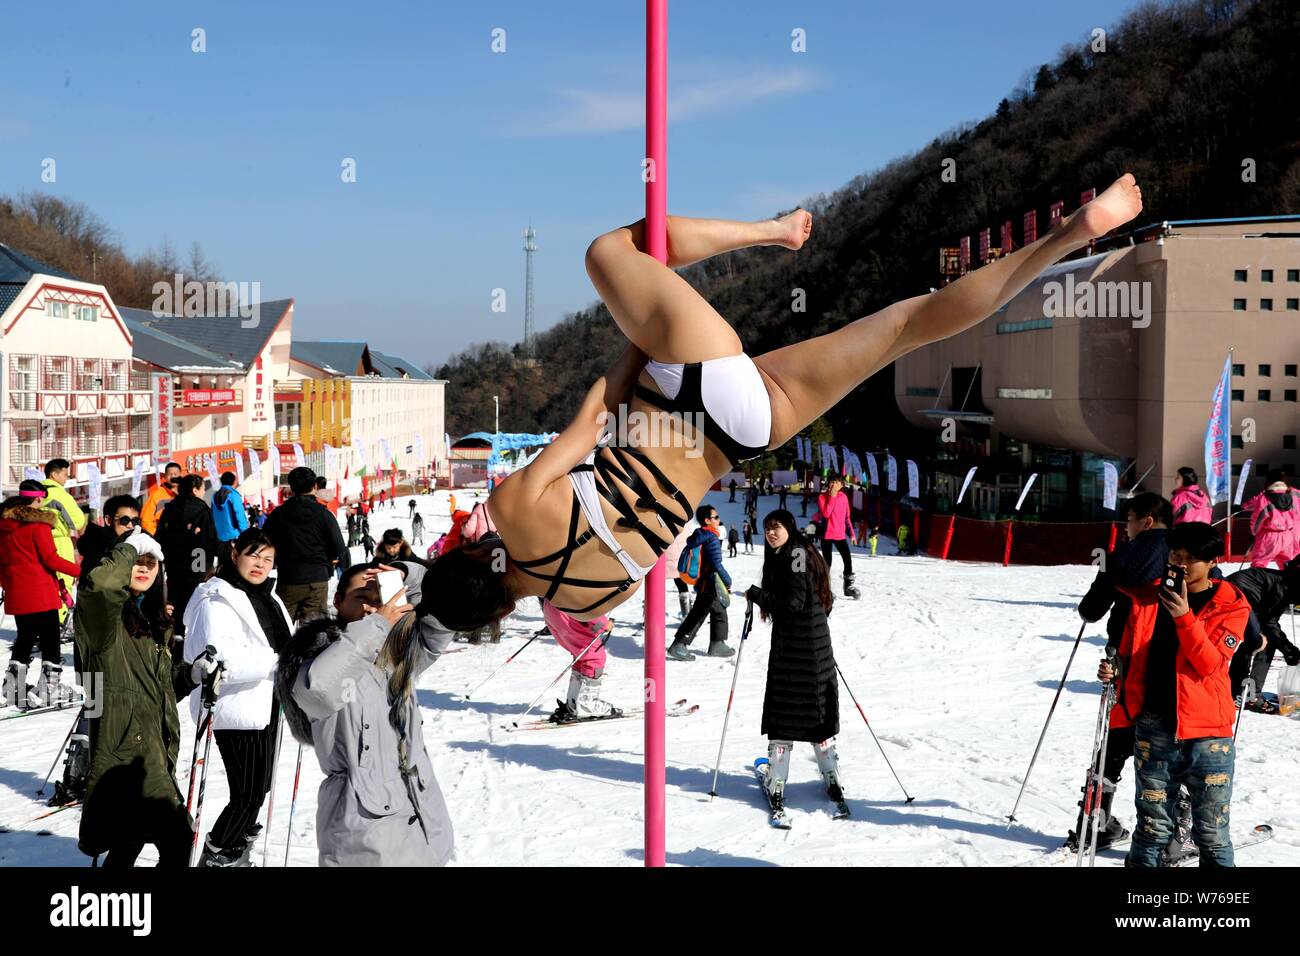 Chinesische Mädchen tragen Bikinis durchführen Pole Dance vor Kälte an einem Ski Park in Luanchuan County, Luoyang City, Central China Provinz Henan, 3. Dezember Stockfoto